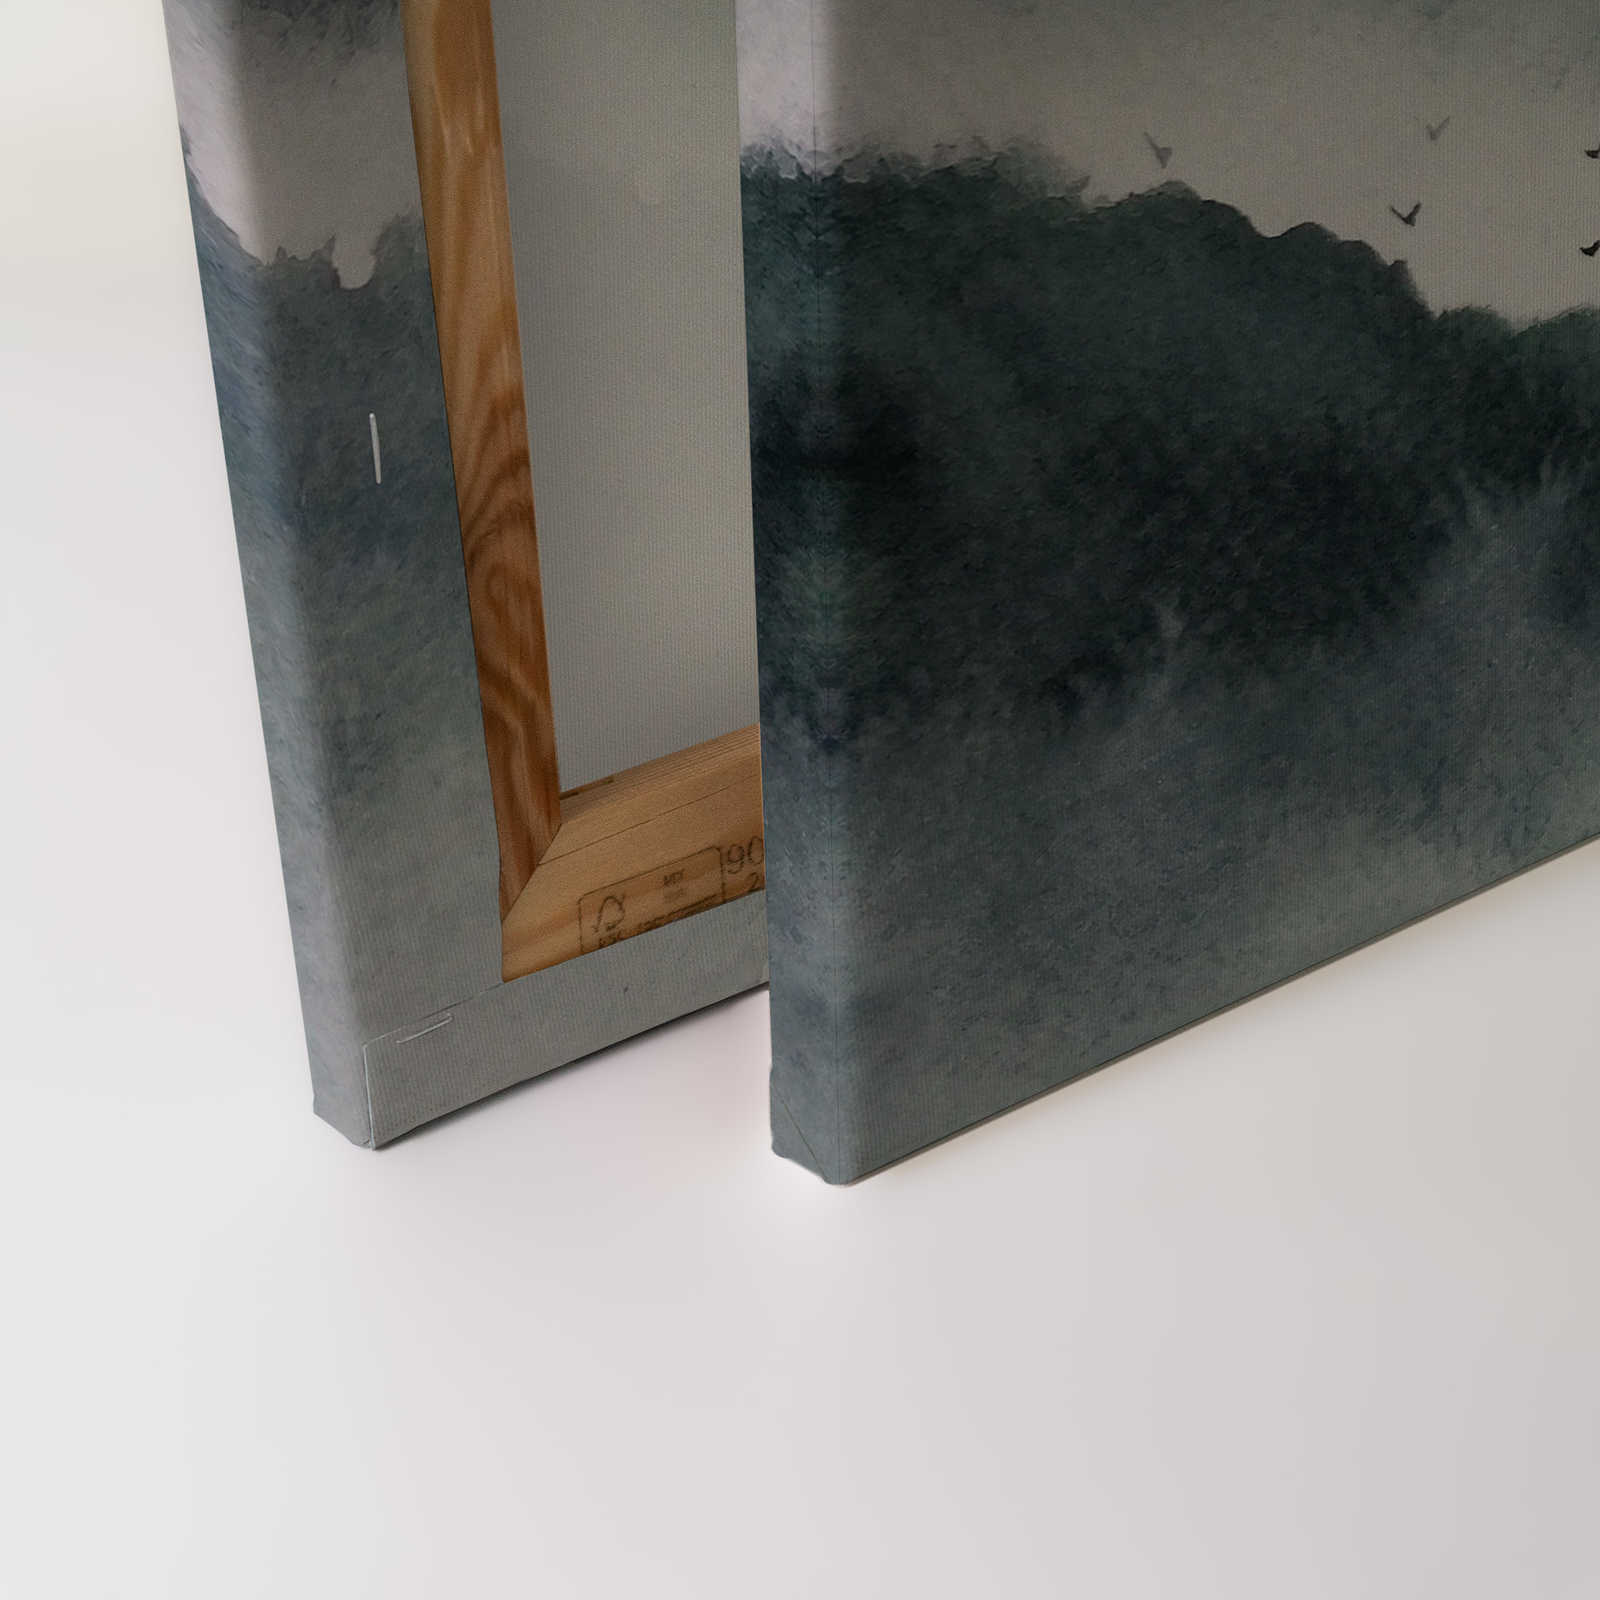             Tela con paesaggio nebbioso in stile pittura | grigio, nero - 0,90 m x 0,60 m
        